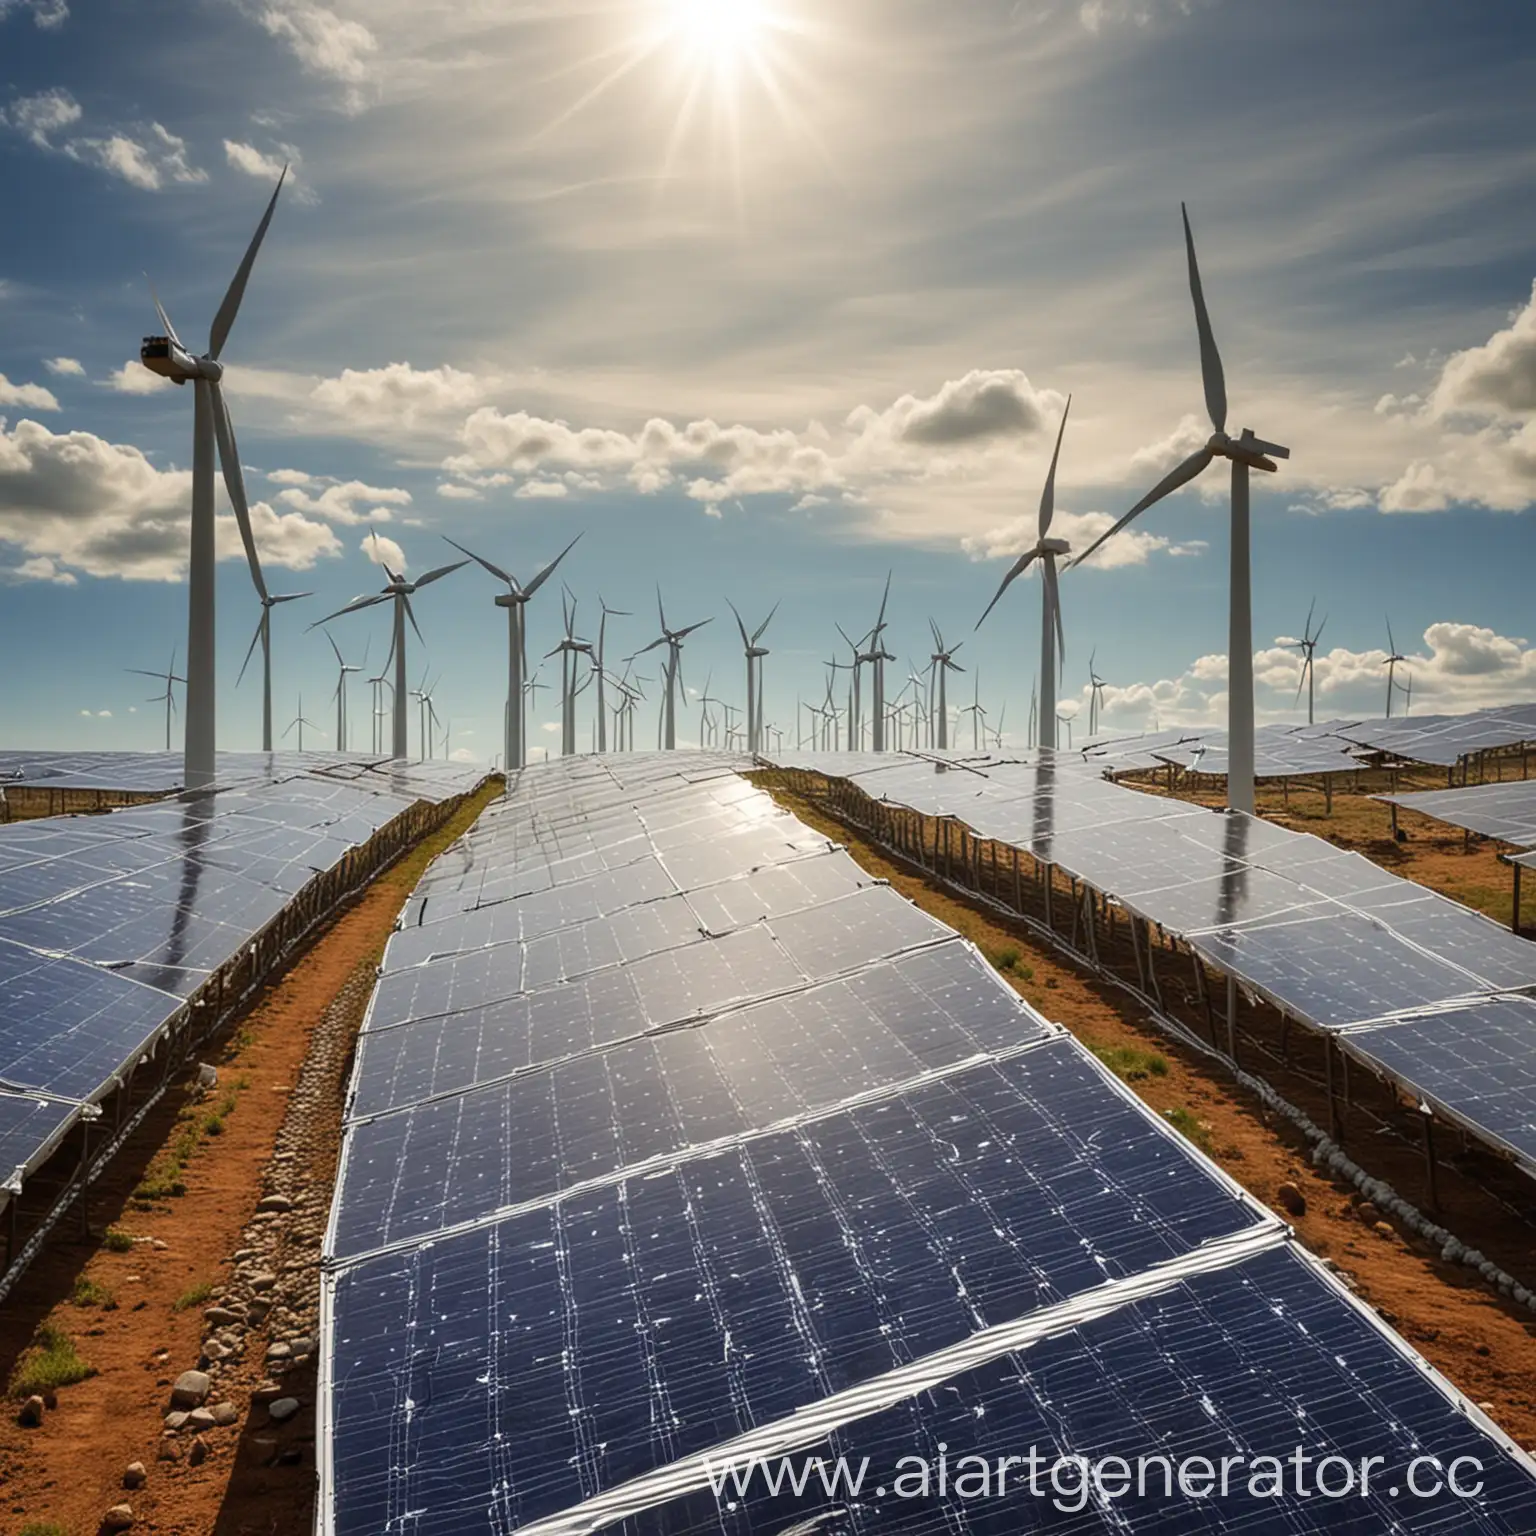 Современные тенденции и перспективы развития мирового рынка возобновляемых источников энергии

